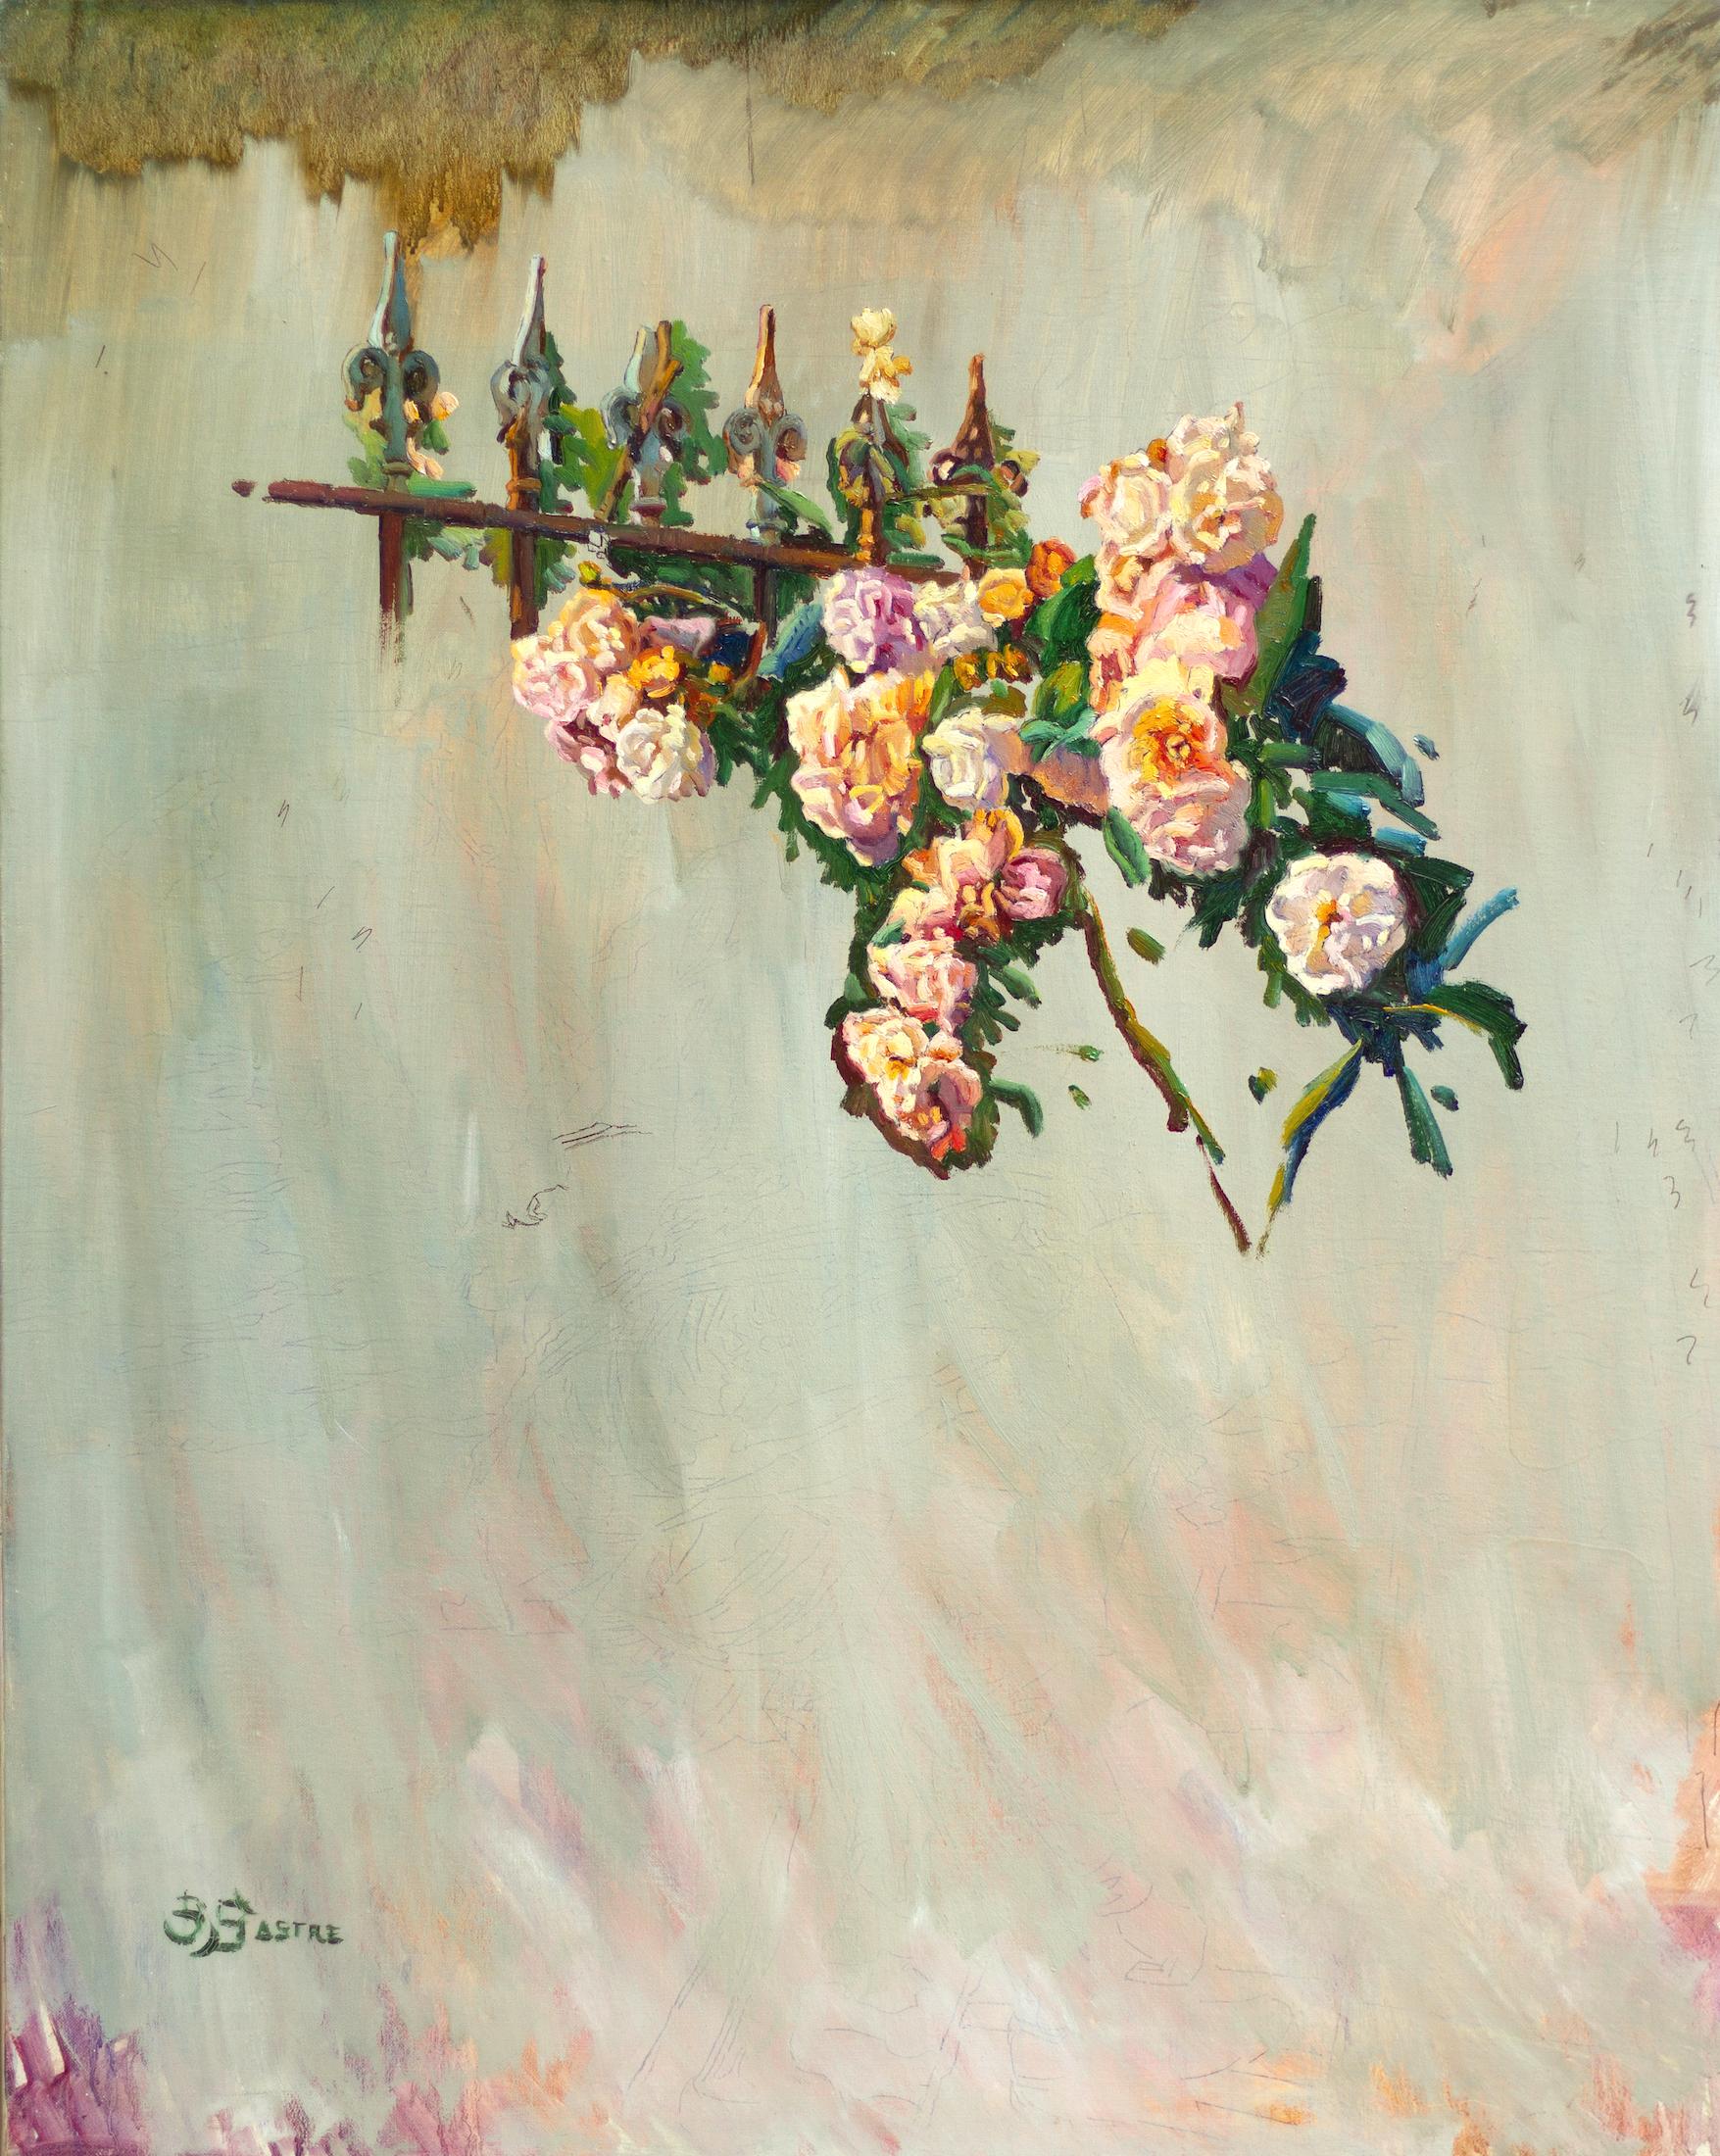 Bartolome Sastre Still-Life Painting - "Estudio de Rosas II" Abstracted Still Life Study of Roses